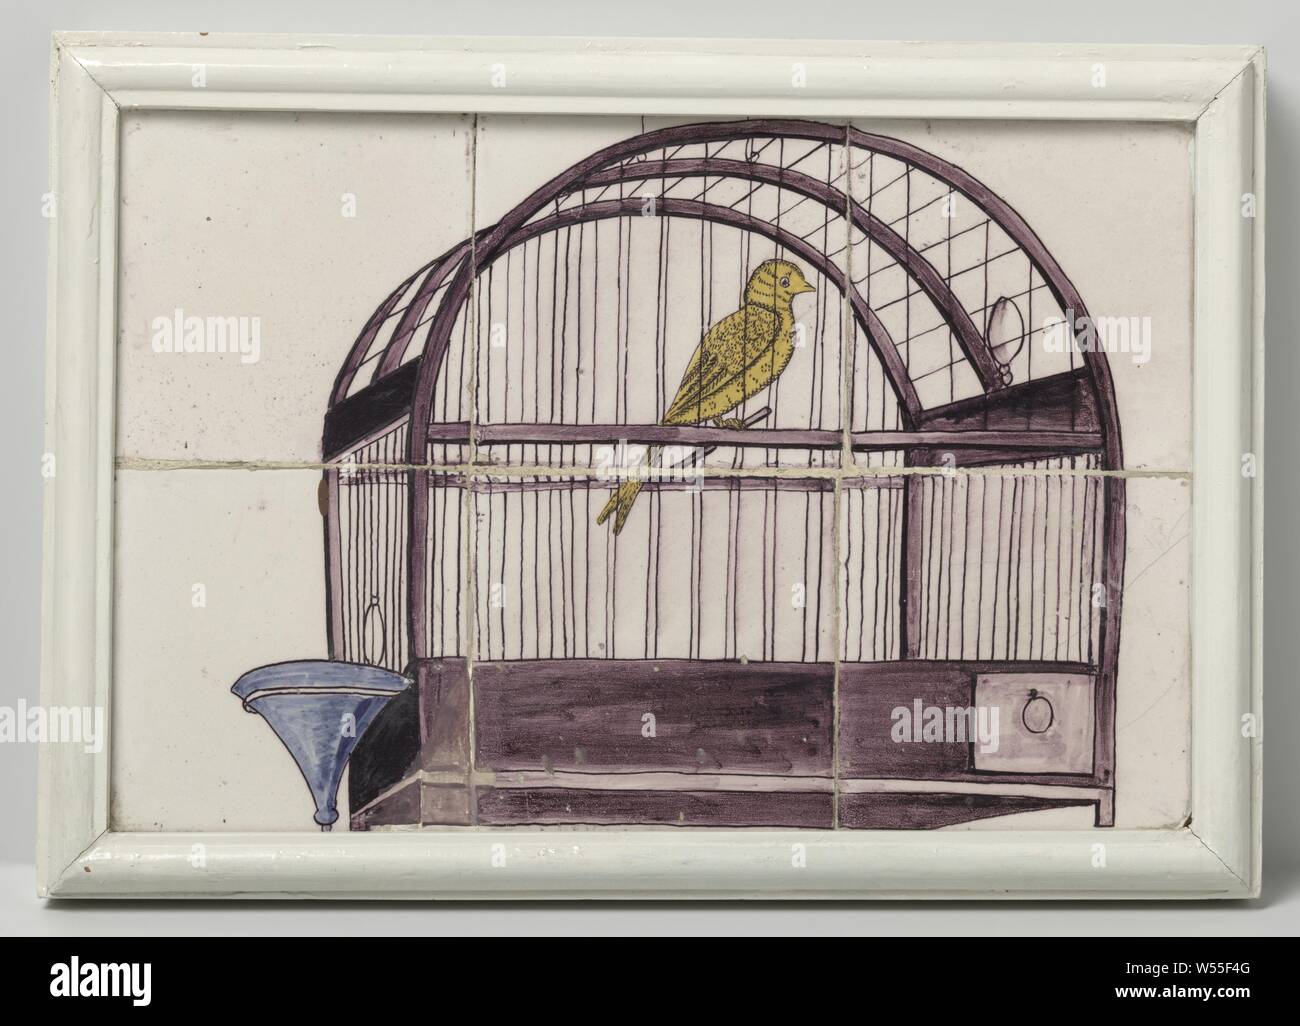 Pannello di piastrelle, dipinta con una rappresentazione di una gabbia per uccelli, pannello di piastrelle di sei piastrelle (2x3), dipinta in viola, blu e giallo con una rappresentazione di una gabbia per uccelli con un abbeveratoio., Bull, anonimo, Olanda, c. 1750 - c. 1800, h 25 cm × W 37,5 cm h 29 cm × W 41,5 cm × d 4 cm Foto Stock